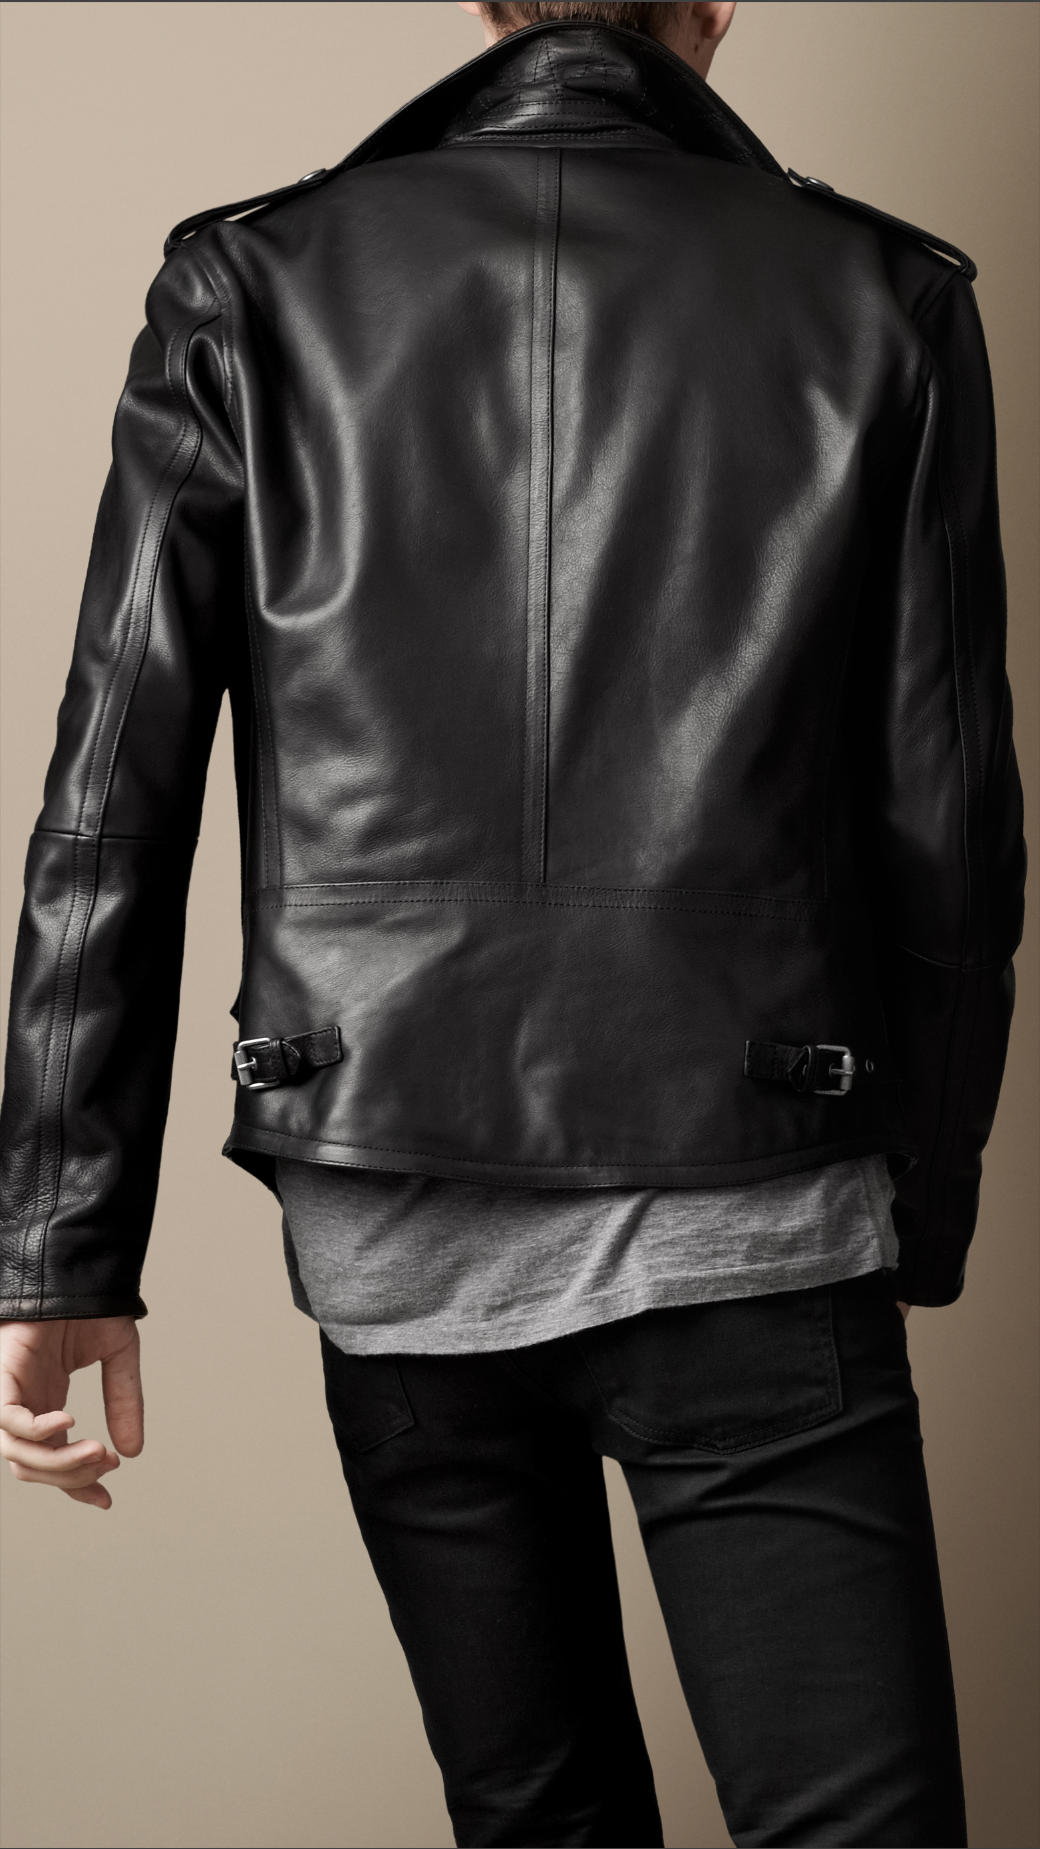 Burberry Brit Leather Biker Jacket in Black for Men - Lyst